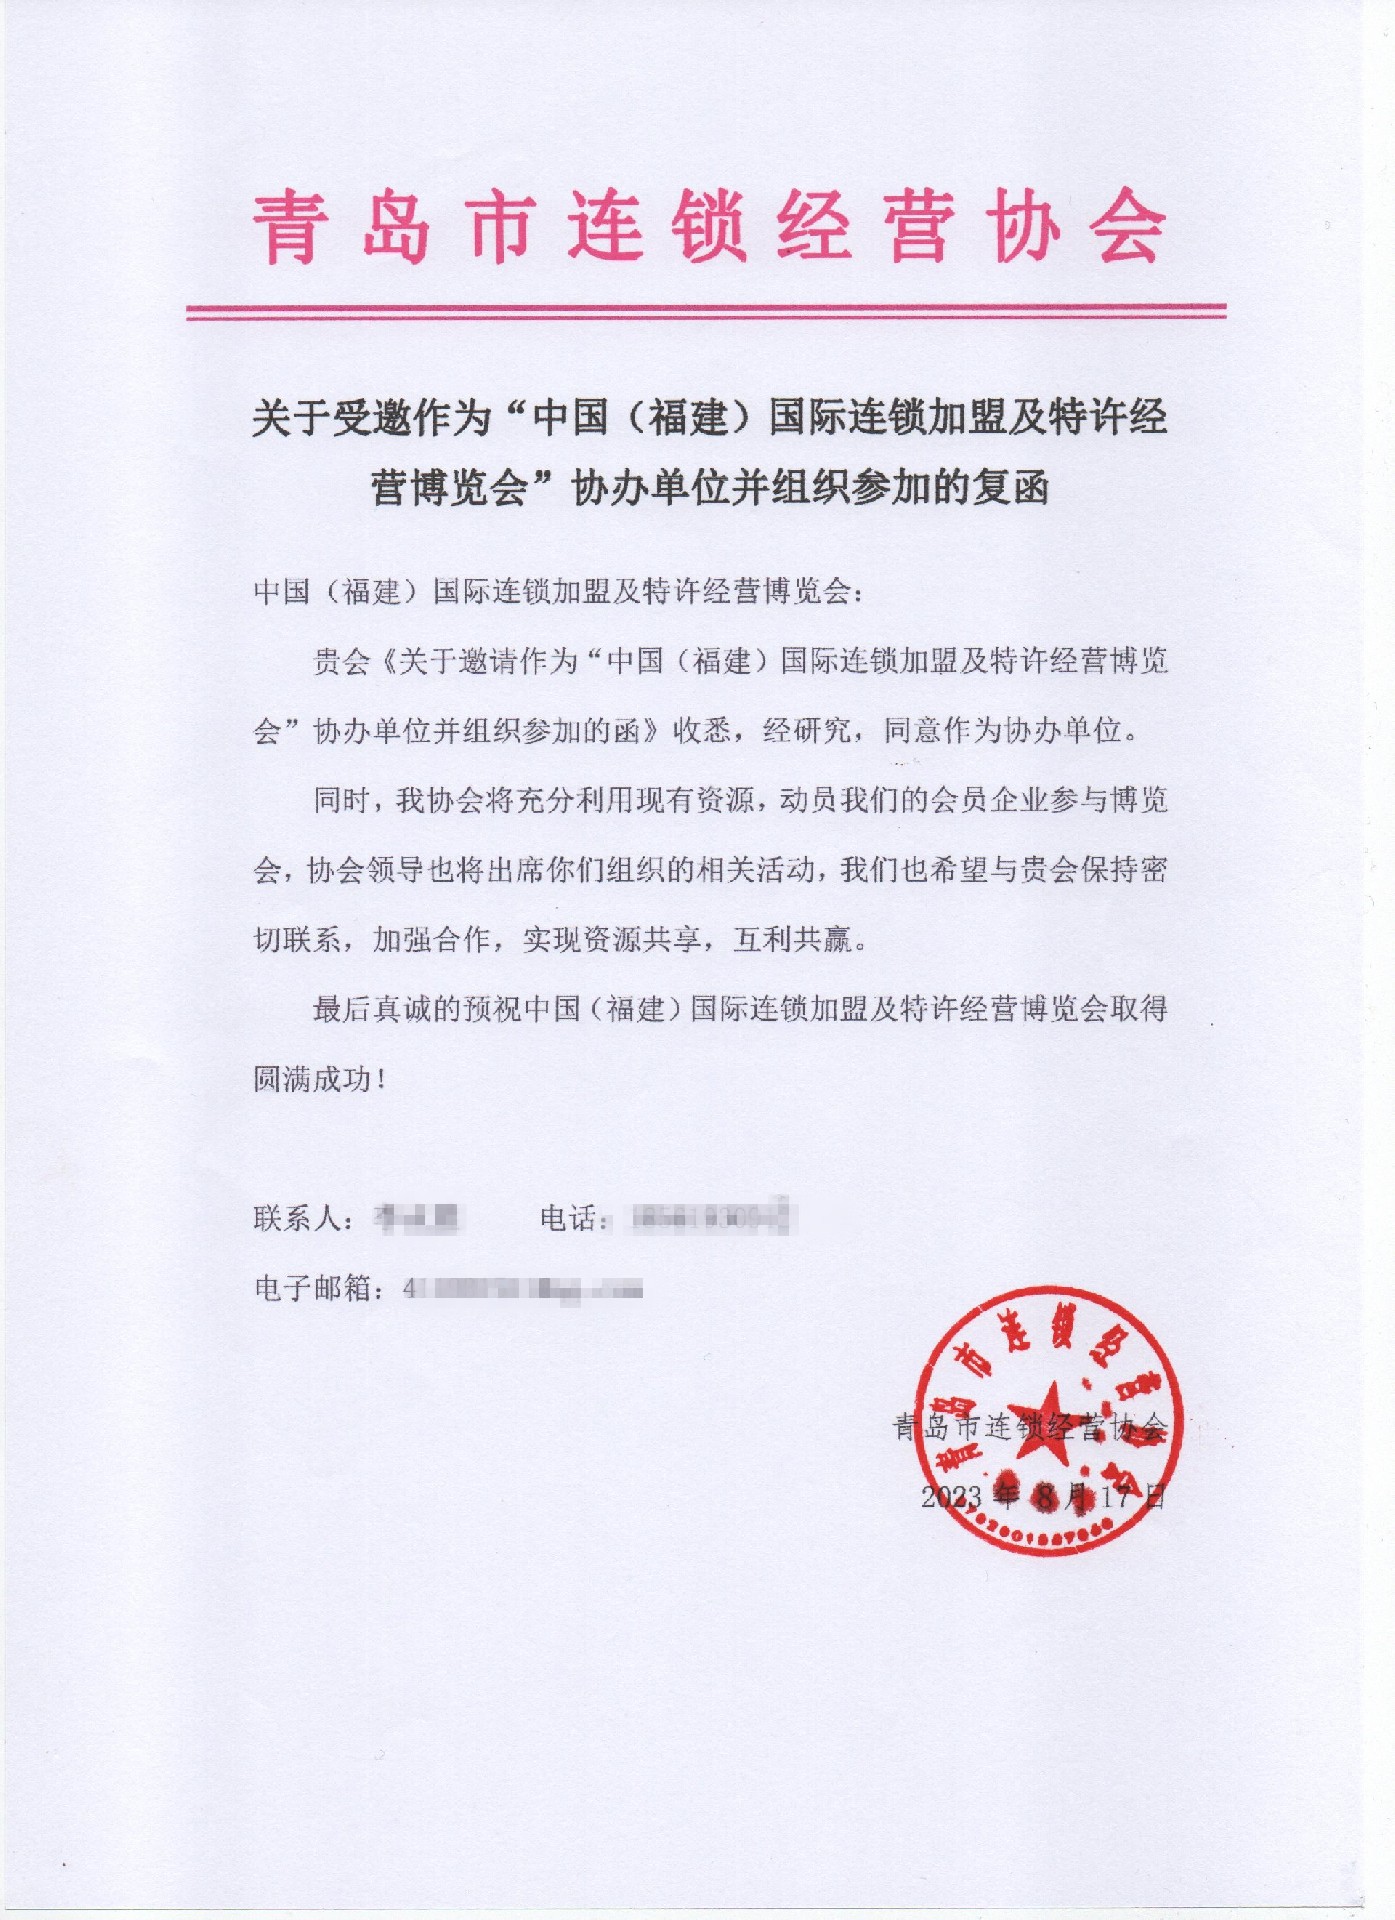 【喜讯】青岛市连锁经营协会回函同意作为FFE2023福建连锁经营及特许经营博览会协办单位